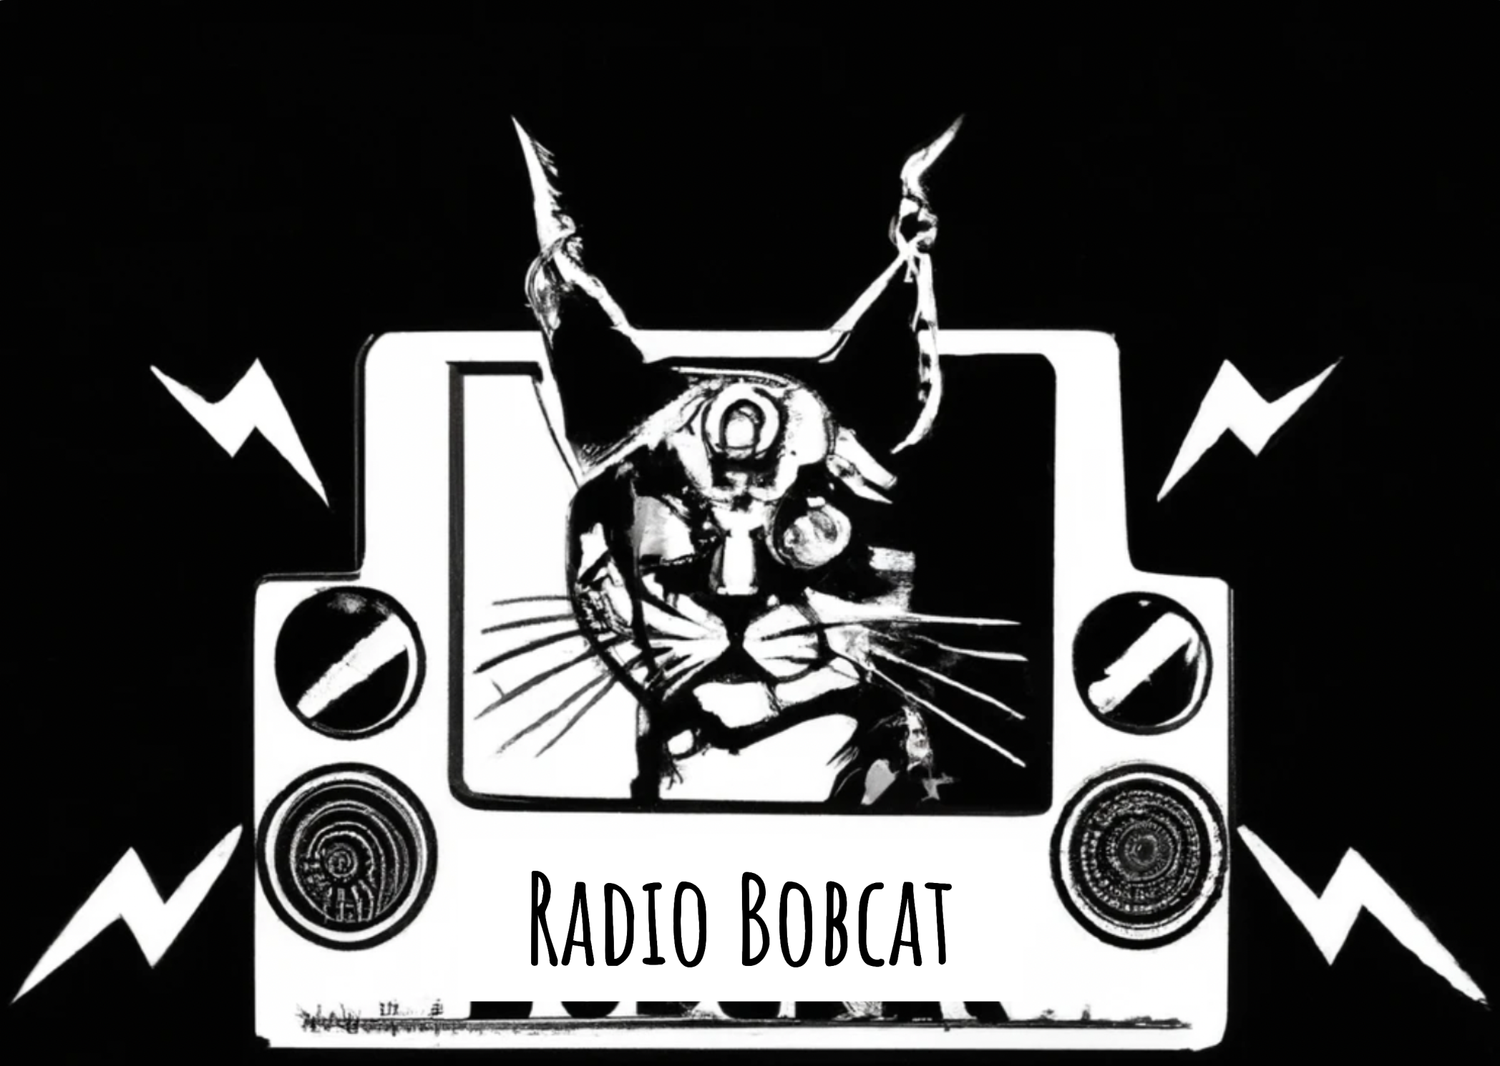 Radio Bobcat